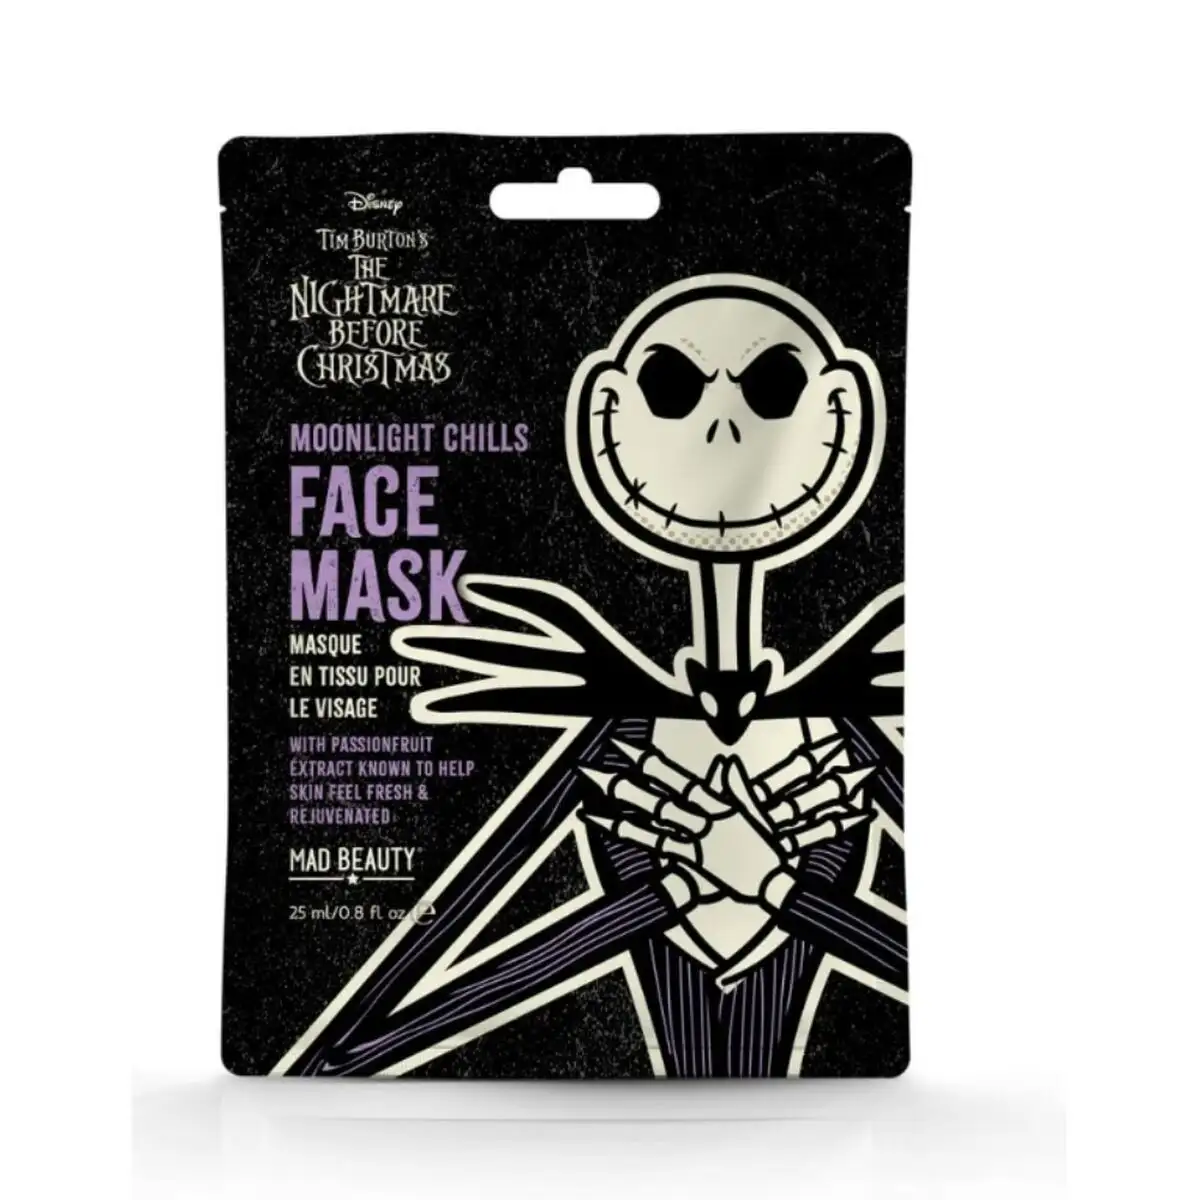 Masque facial mad beauty jack skeleton grenadille fruit de la passion _8762. DIAYTAR SENEGAL - Votre Source de Découvertes Shopping. Découvrez des trésors dans notre boutique en ligne, allant des articles artisanaux aux innovations modernes.